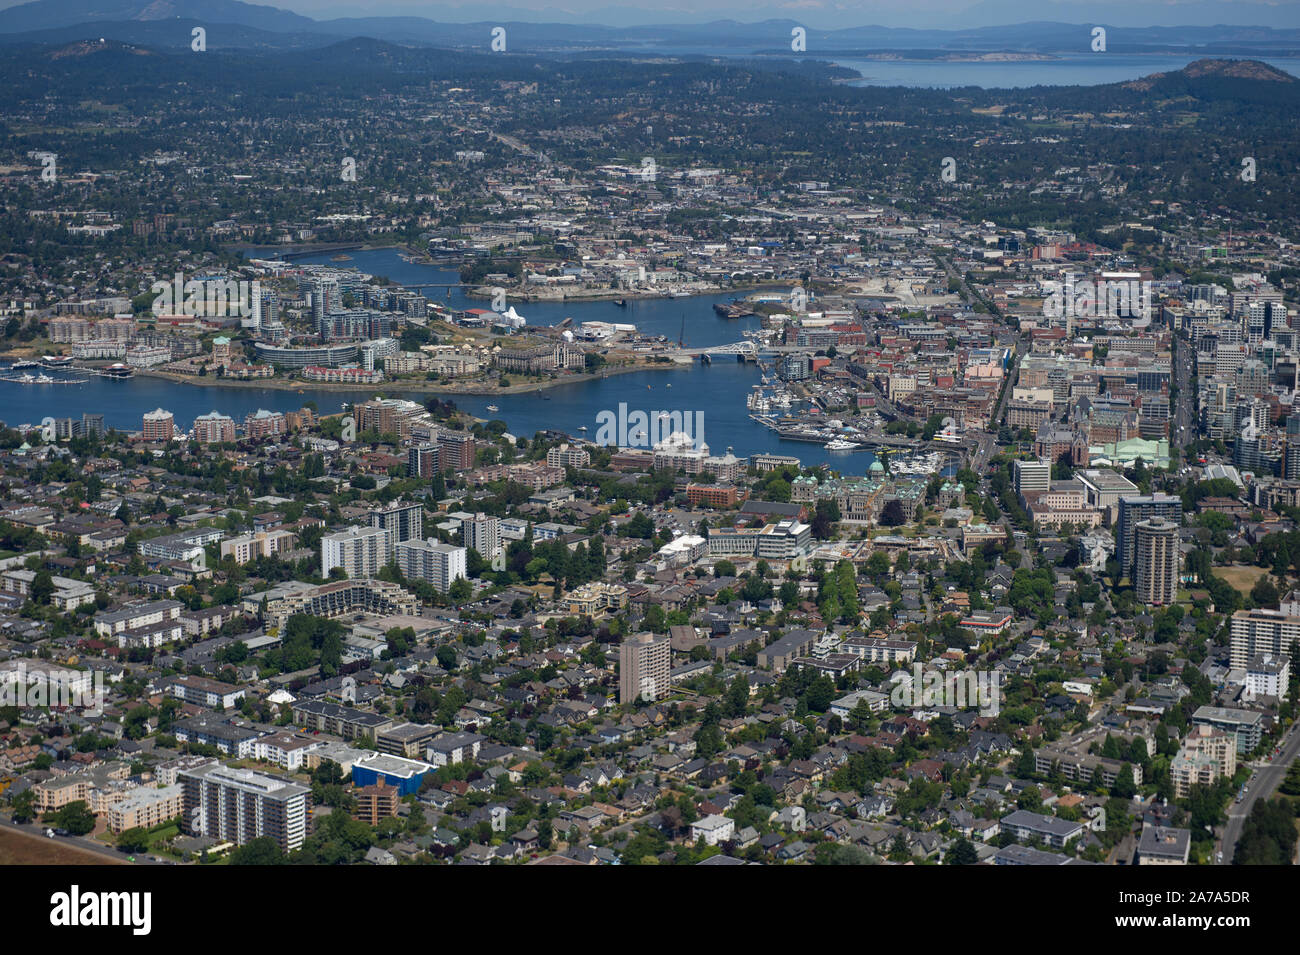 Una veduta aerea del parco riempito città di Victoria, British Columbia, Canada, sull'Isola di Vancouver. Foto Stock